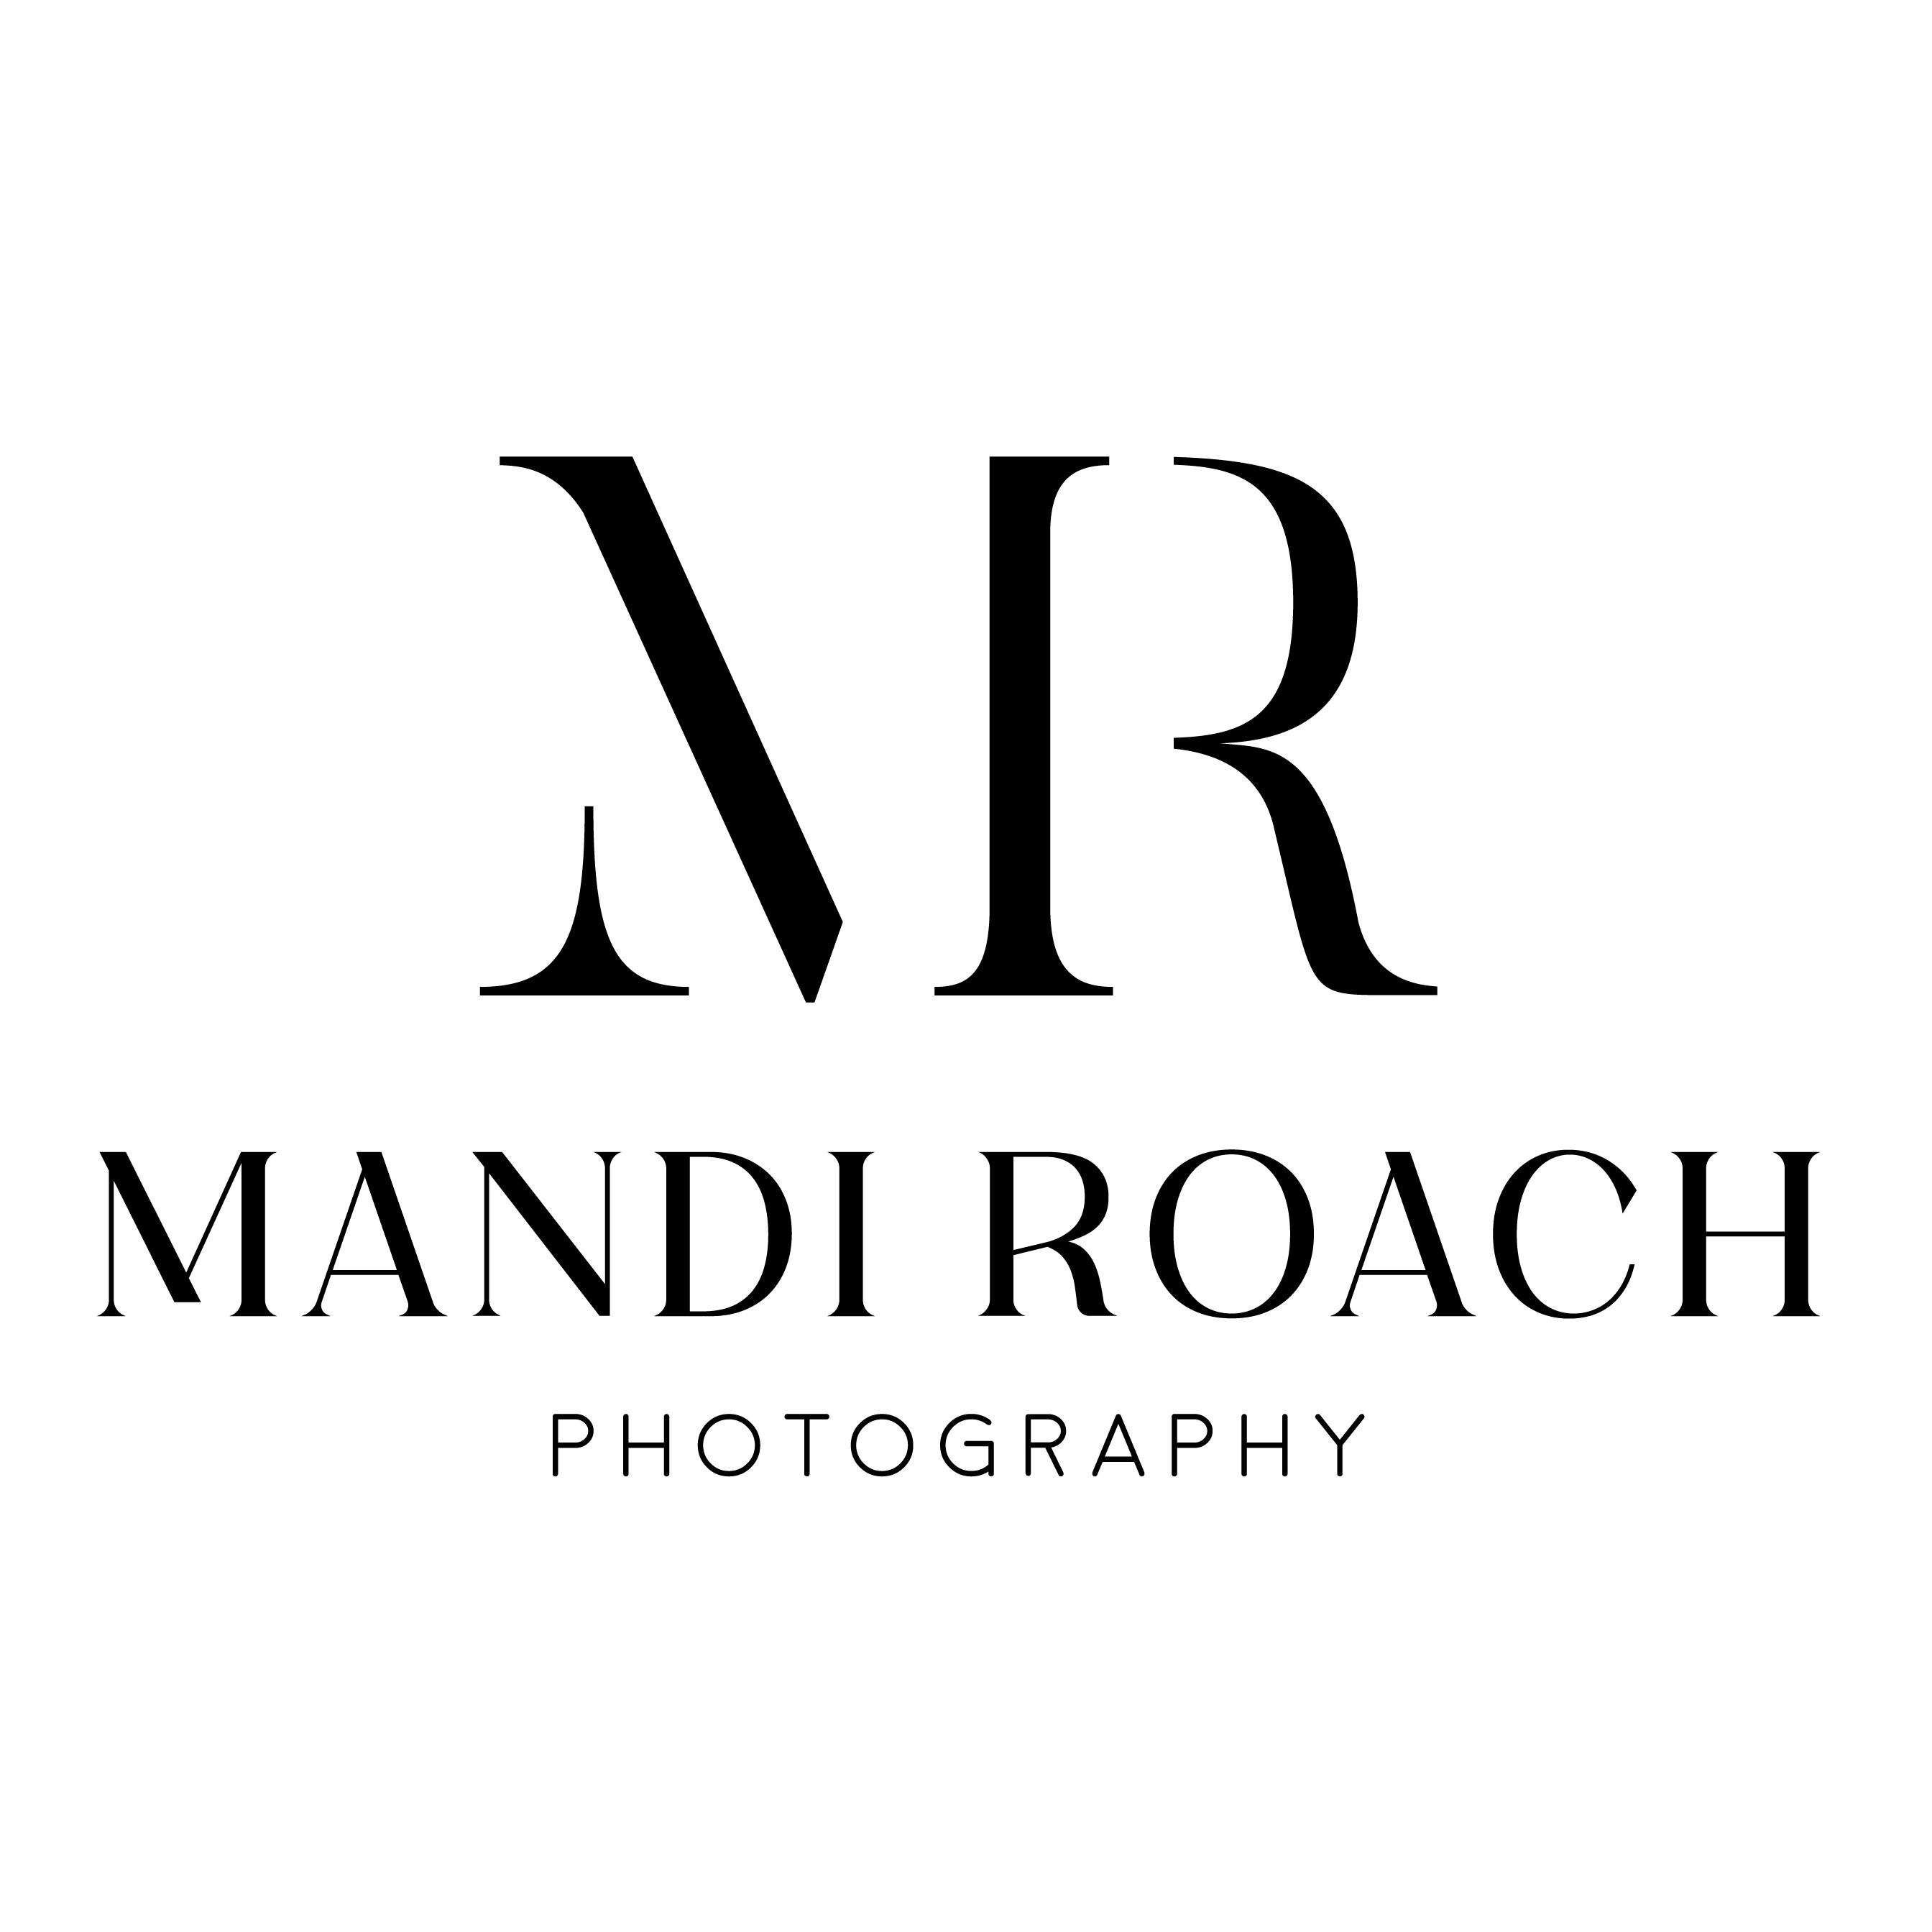 Mandi Roach Photography